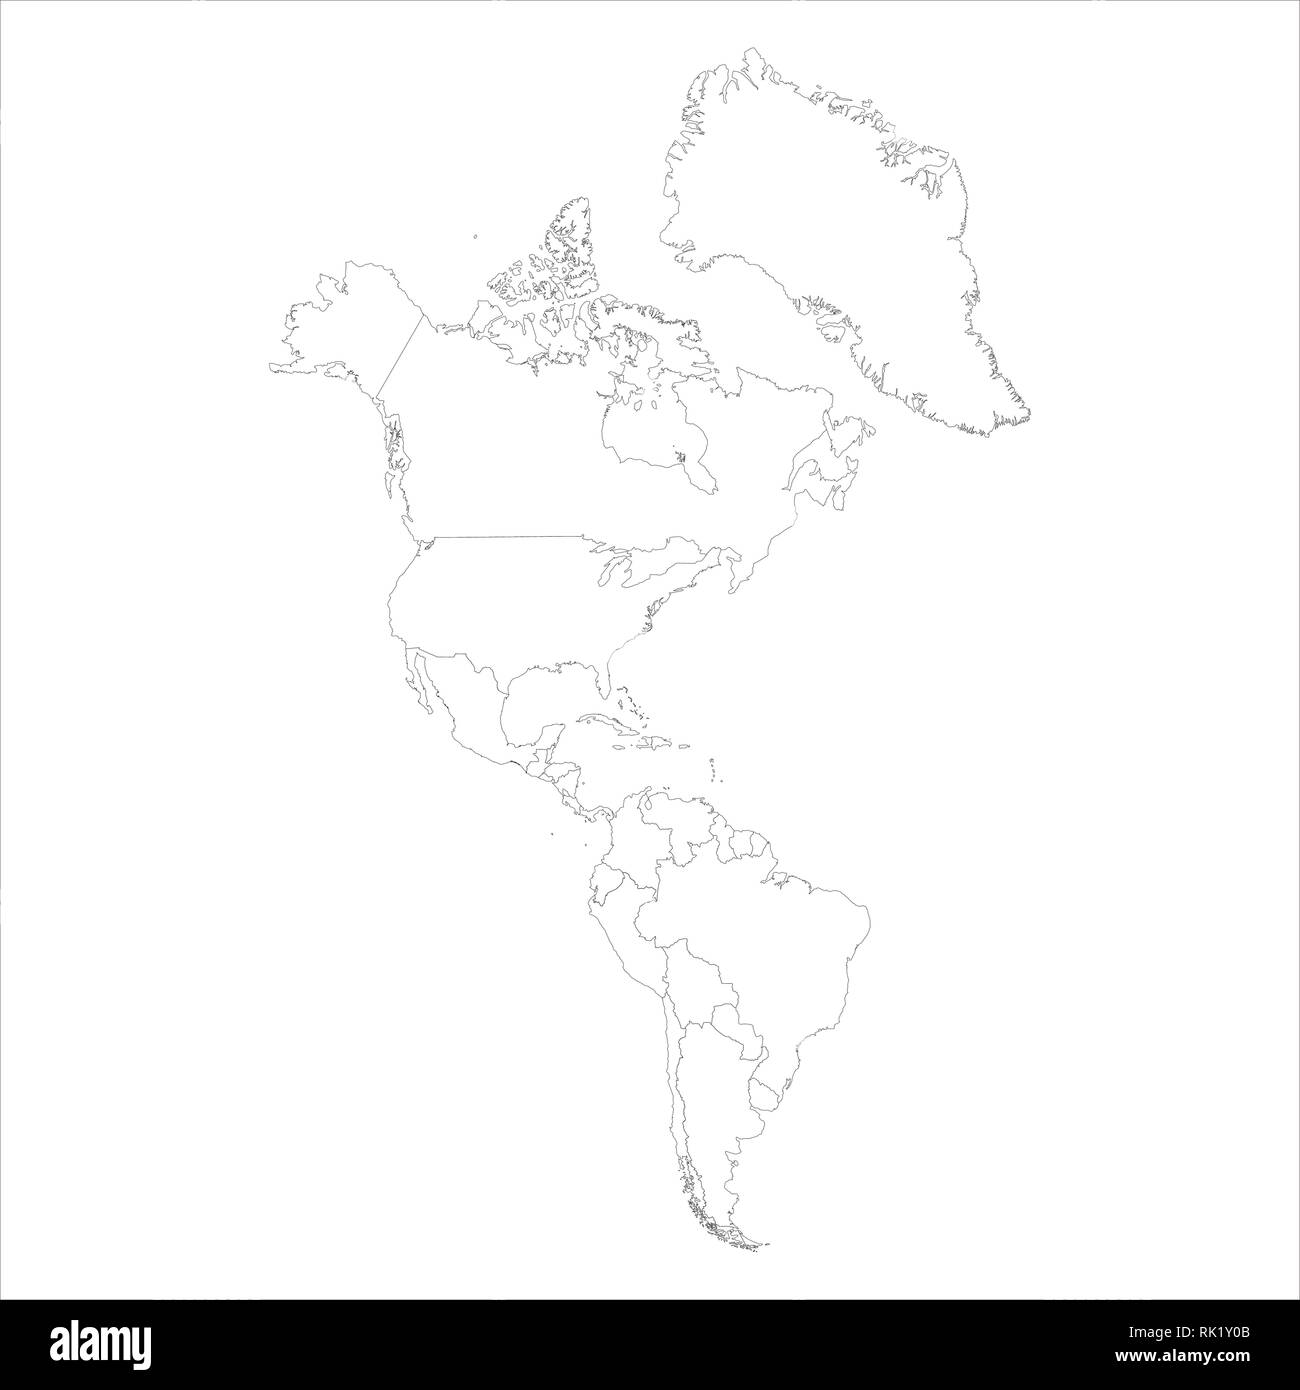 Mapamundi Blanco Negro plastificado  Mapas para Colombia y América Central  de pared grandes